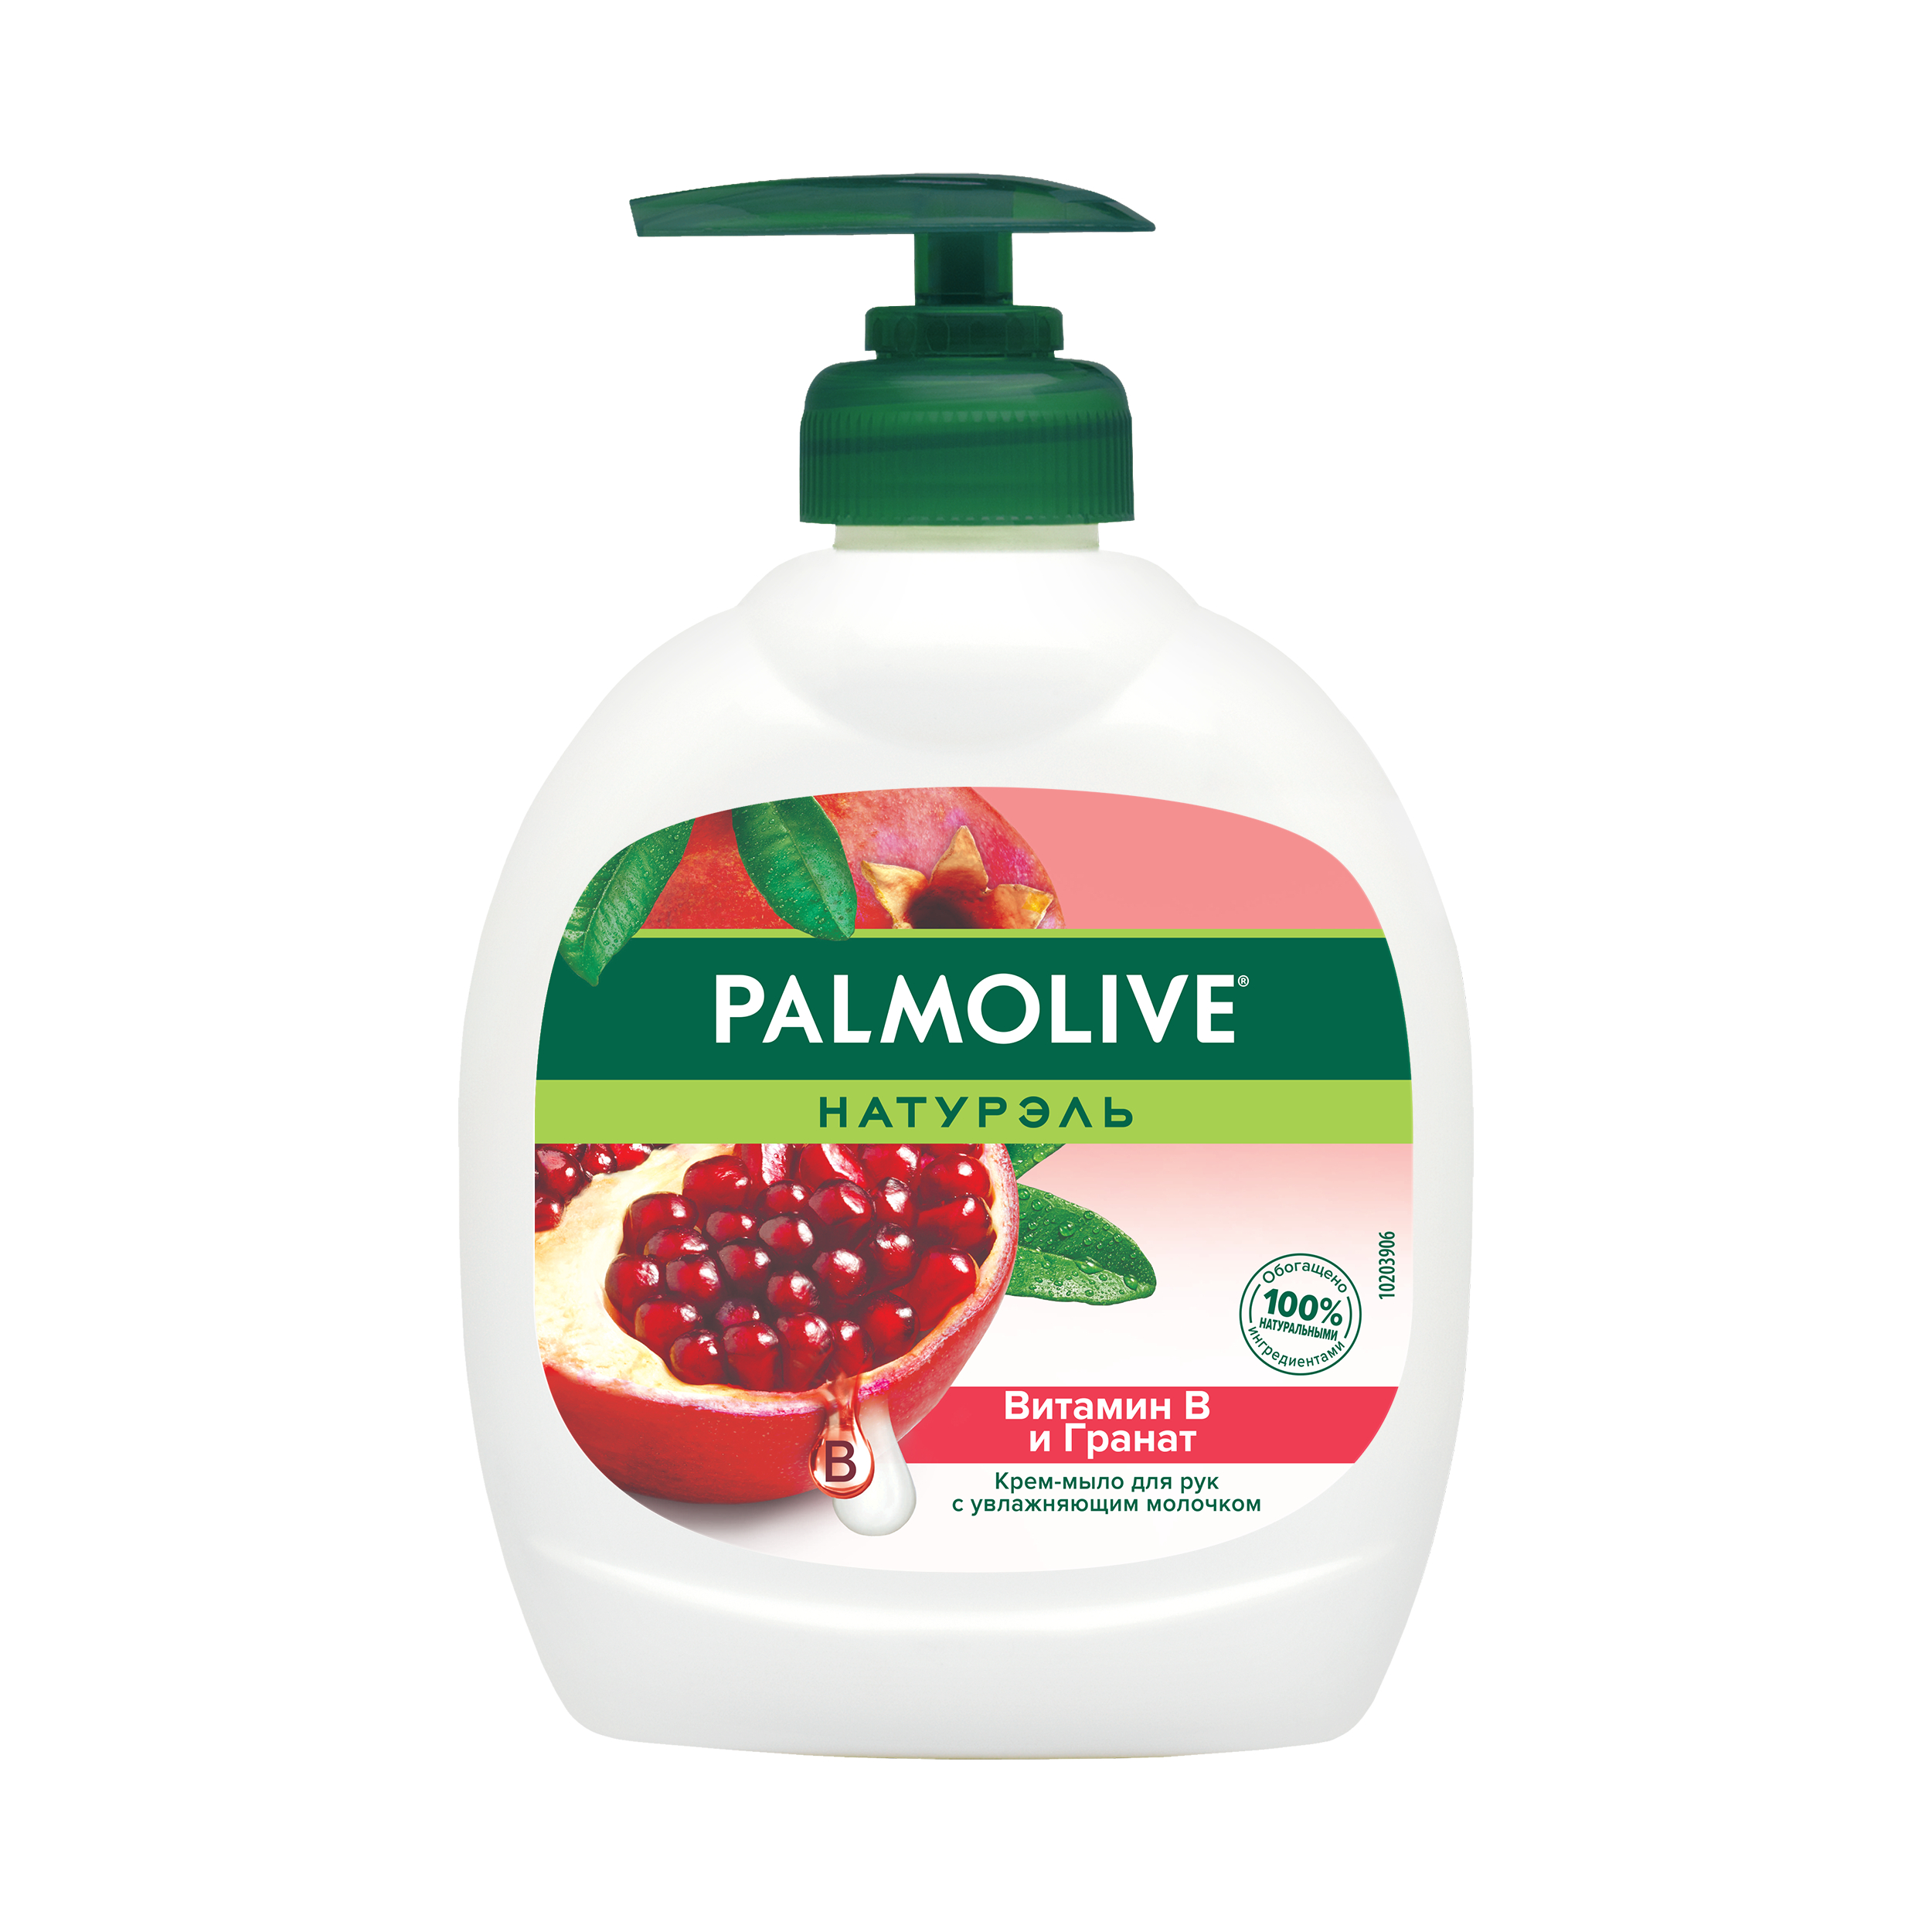 Крем-мыло жидкое для рук Palmolive Натурэль с витамином B и гранатом 300 мл